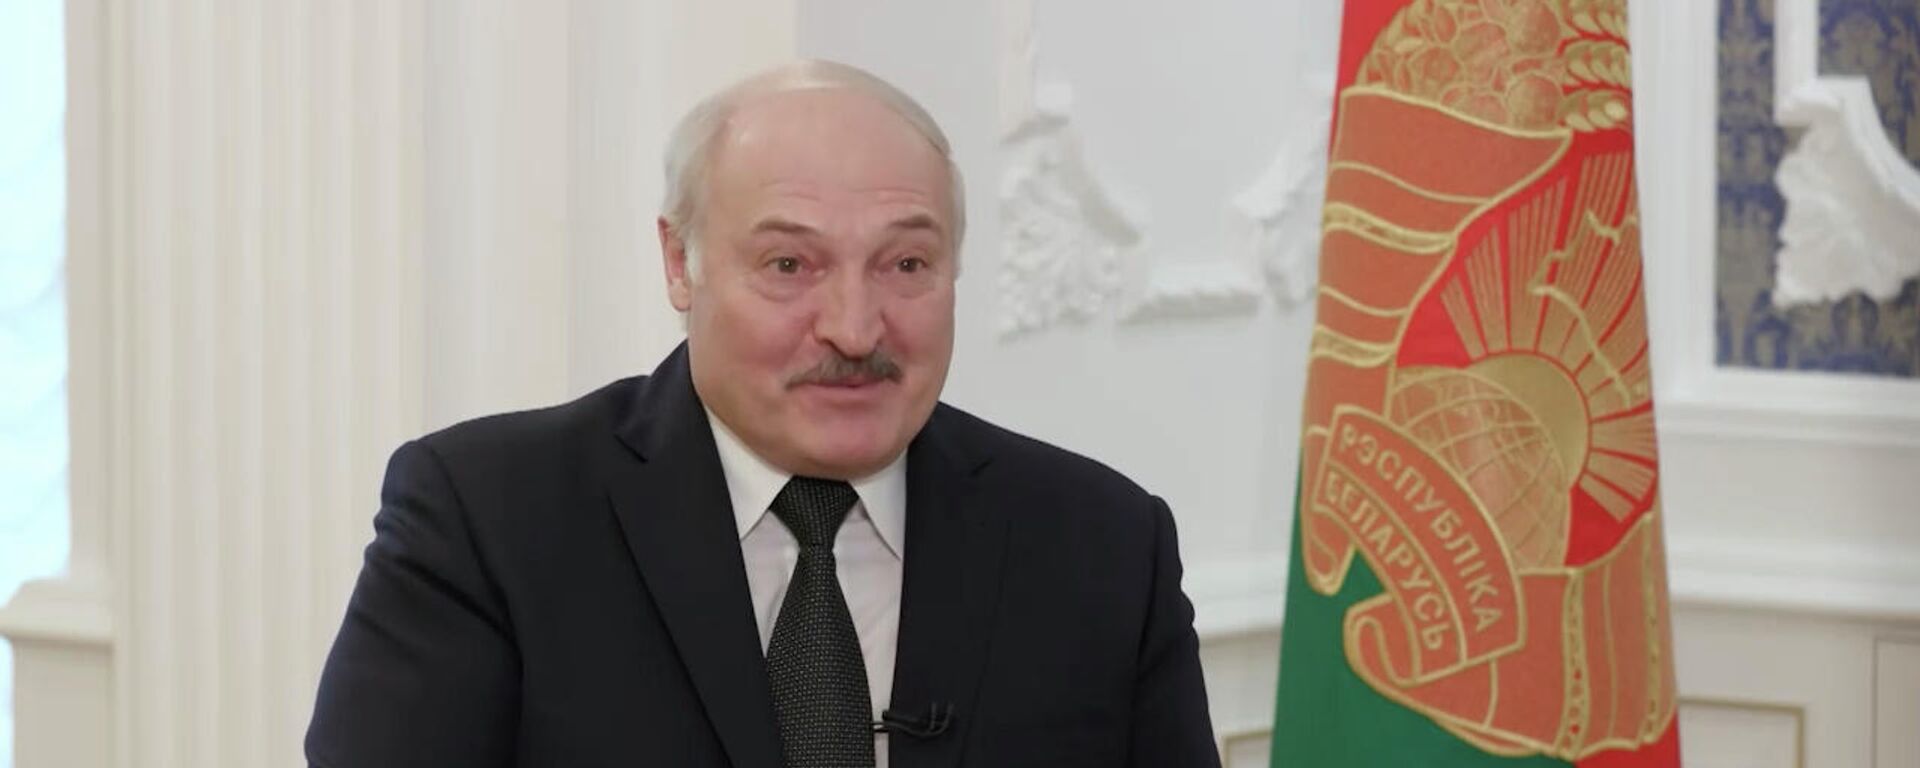 Лукашенко рассказал, чем они похожи с Путиным - видео  - Sputnik Беларусь, 1920, 13.11.2021